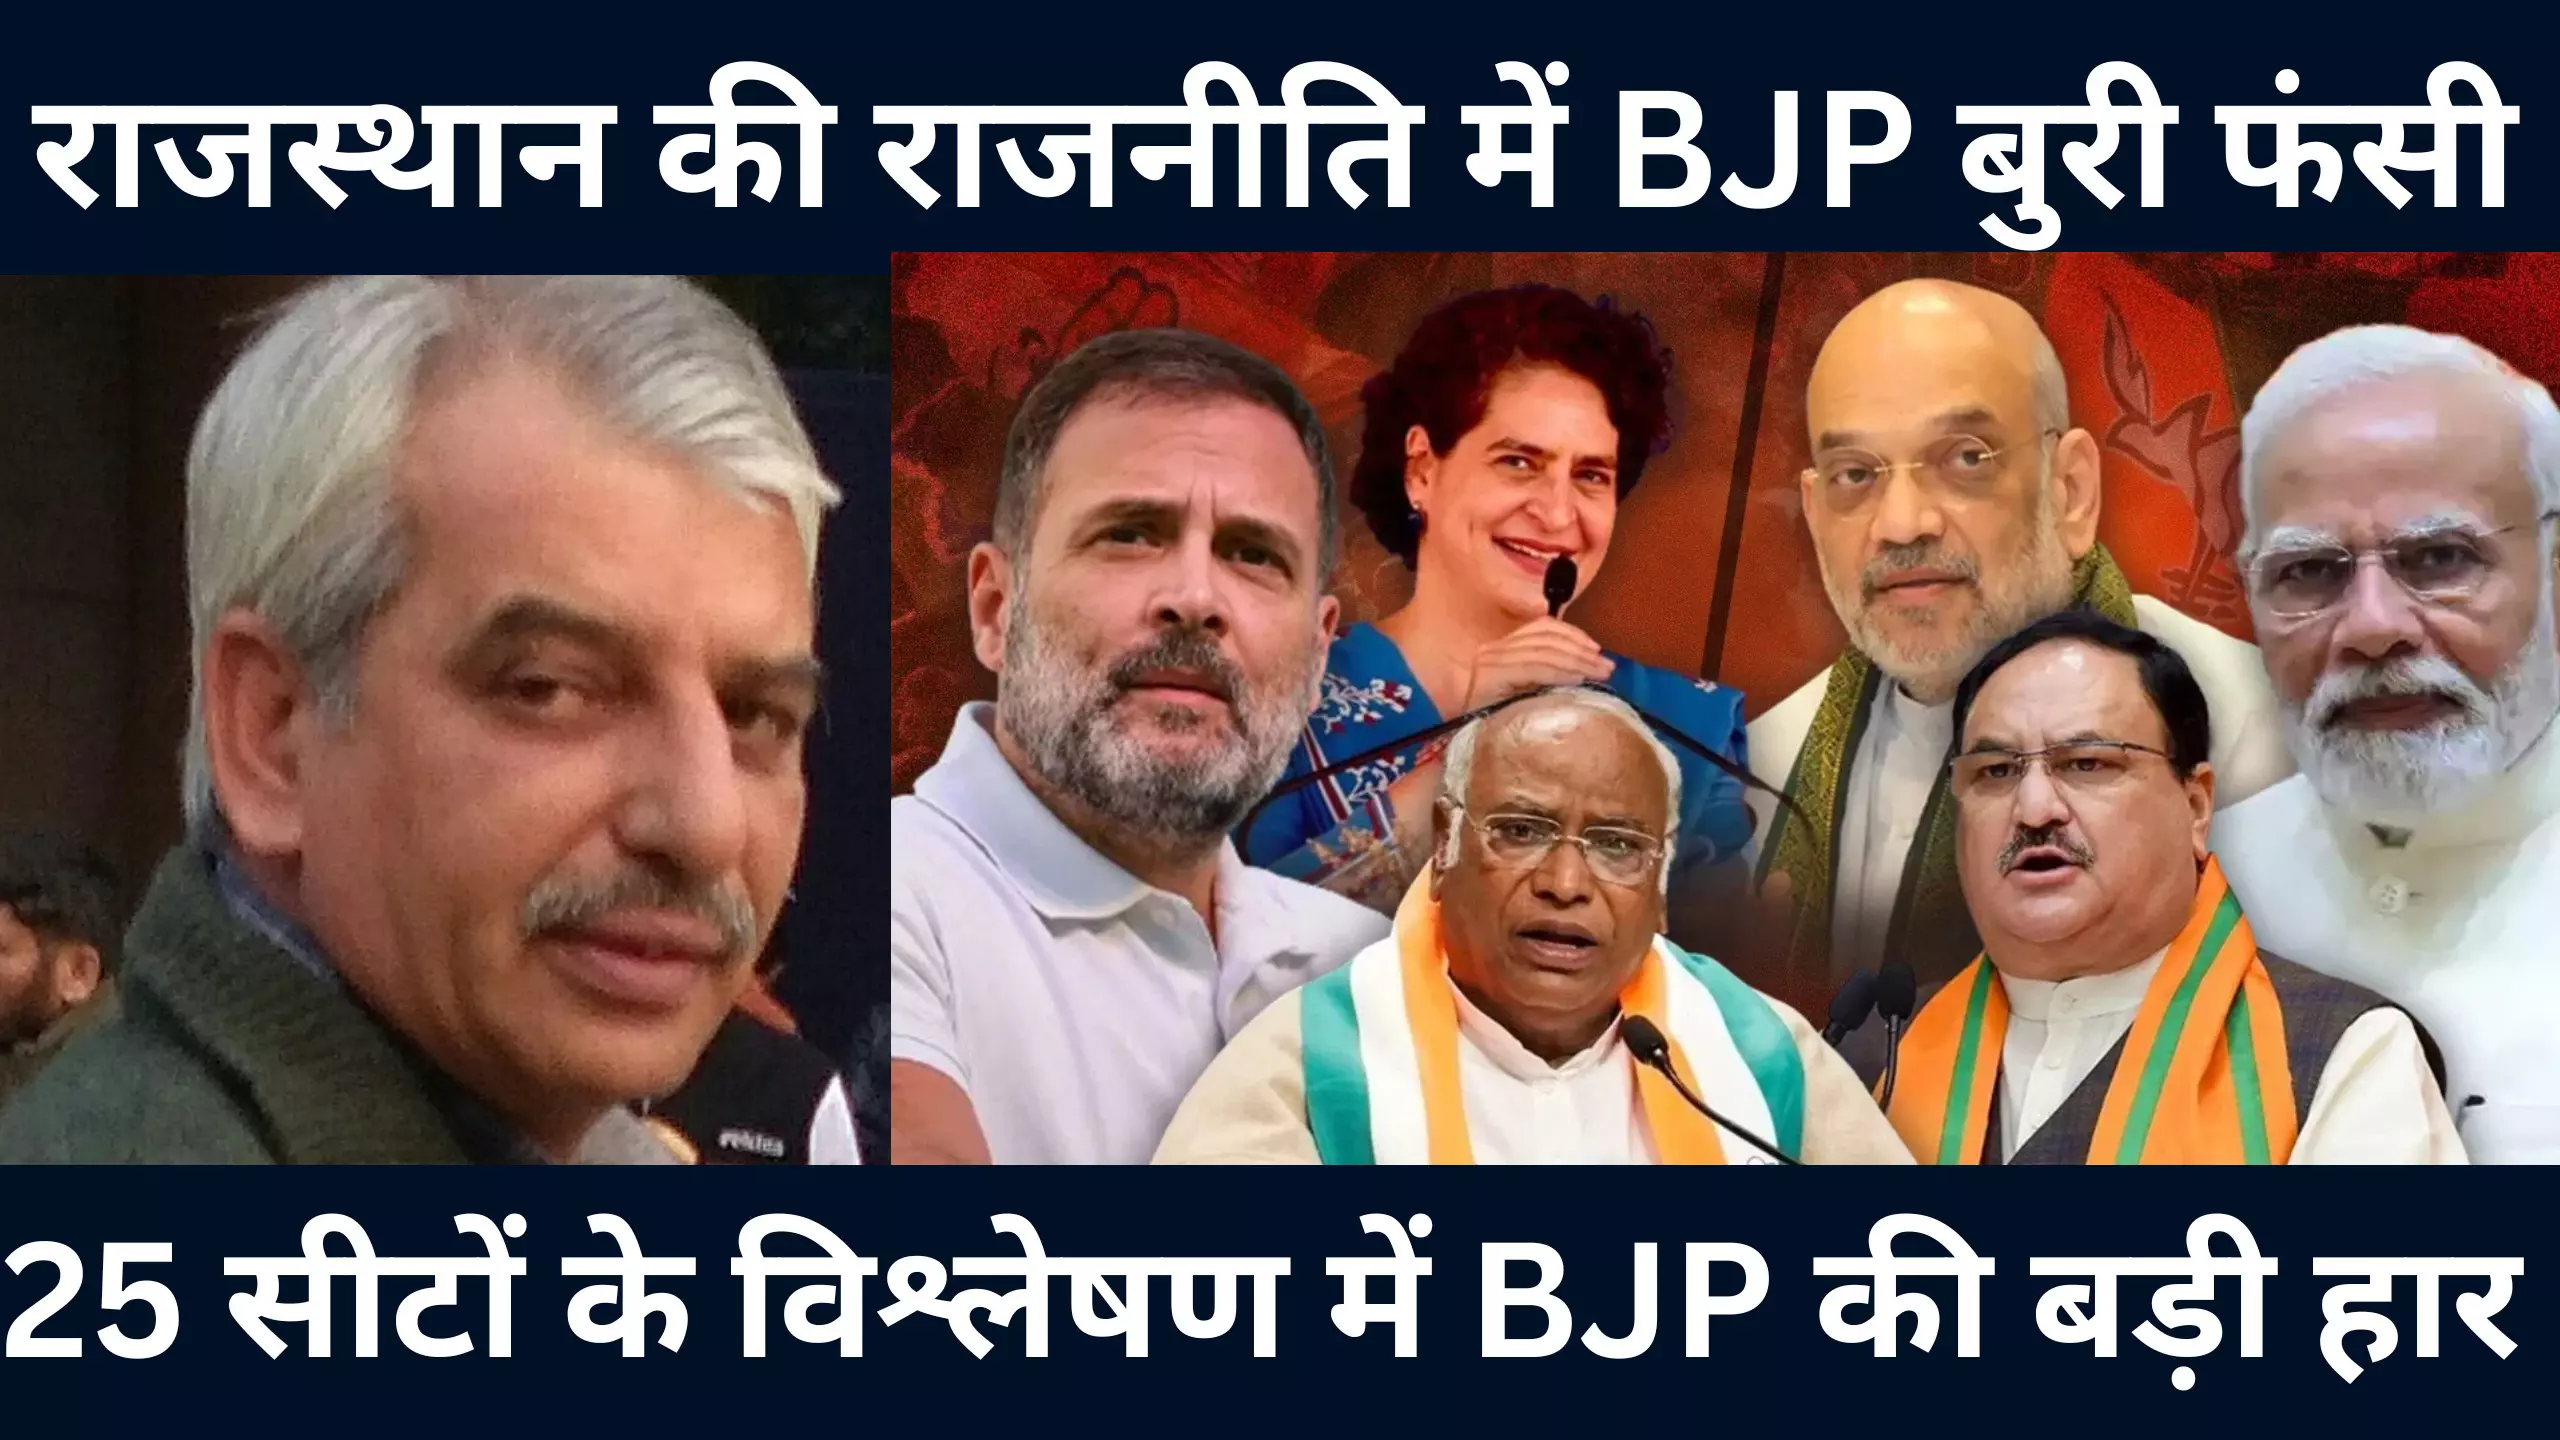 लोकसभा चुनाव में राजस्थान में टूट जाएगा बीजेपी का घमंड